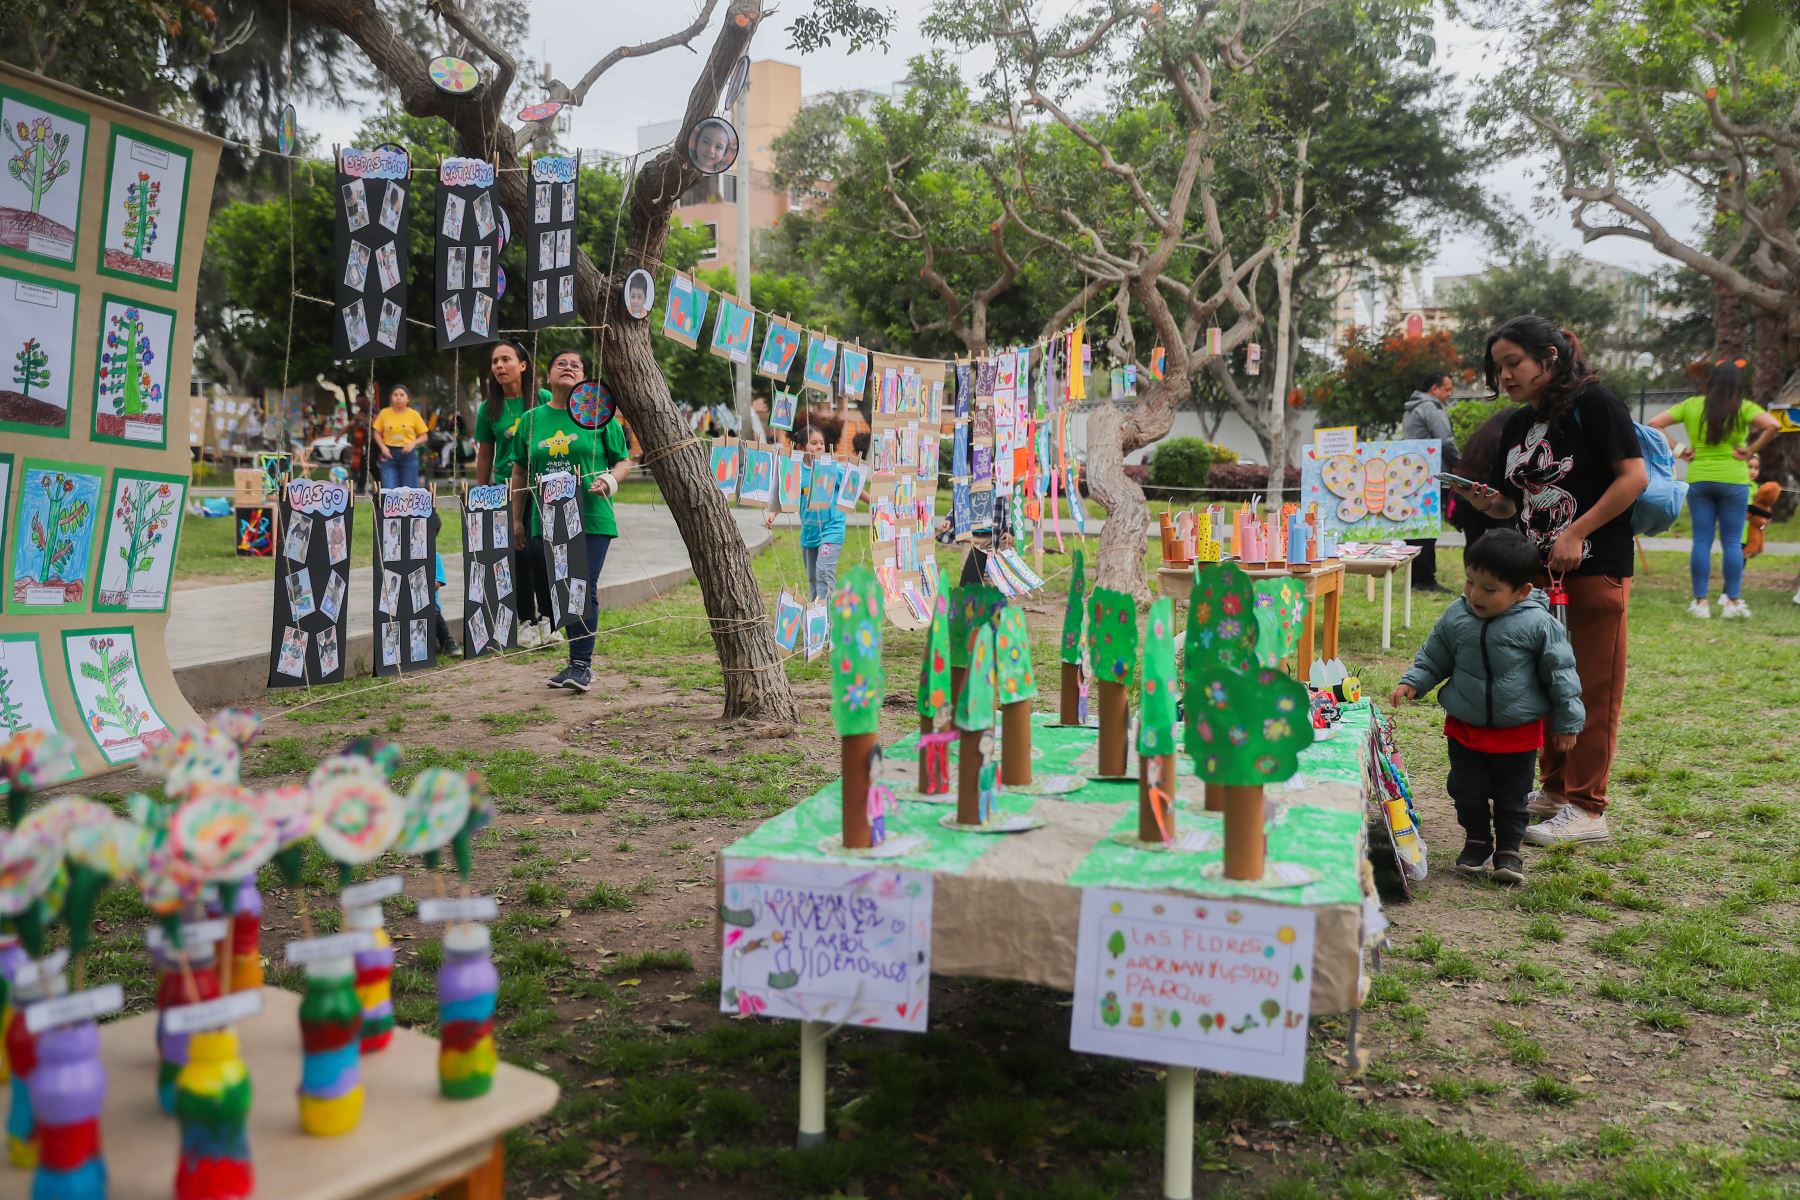 La sexta edición de "Arte al Parque", que muestra los trabajos de dibujo y pintura realizados por niños de 1 a 5 años, se realizó con el apoyo de Jardín de la Amistad y la Municipalidad de Miraflores. 
Foto: ANDINA/Ricardo Cuba